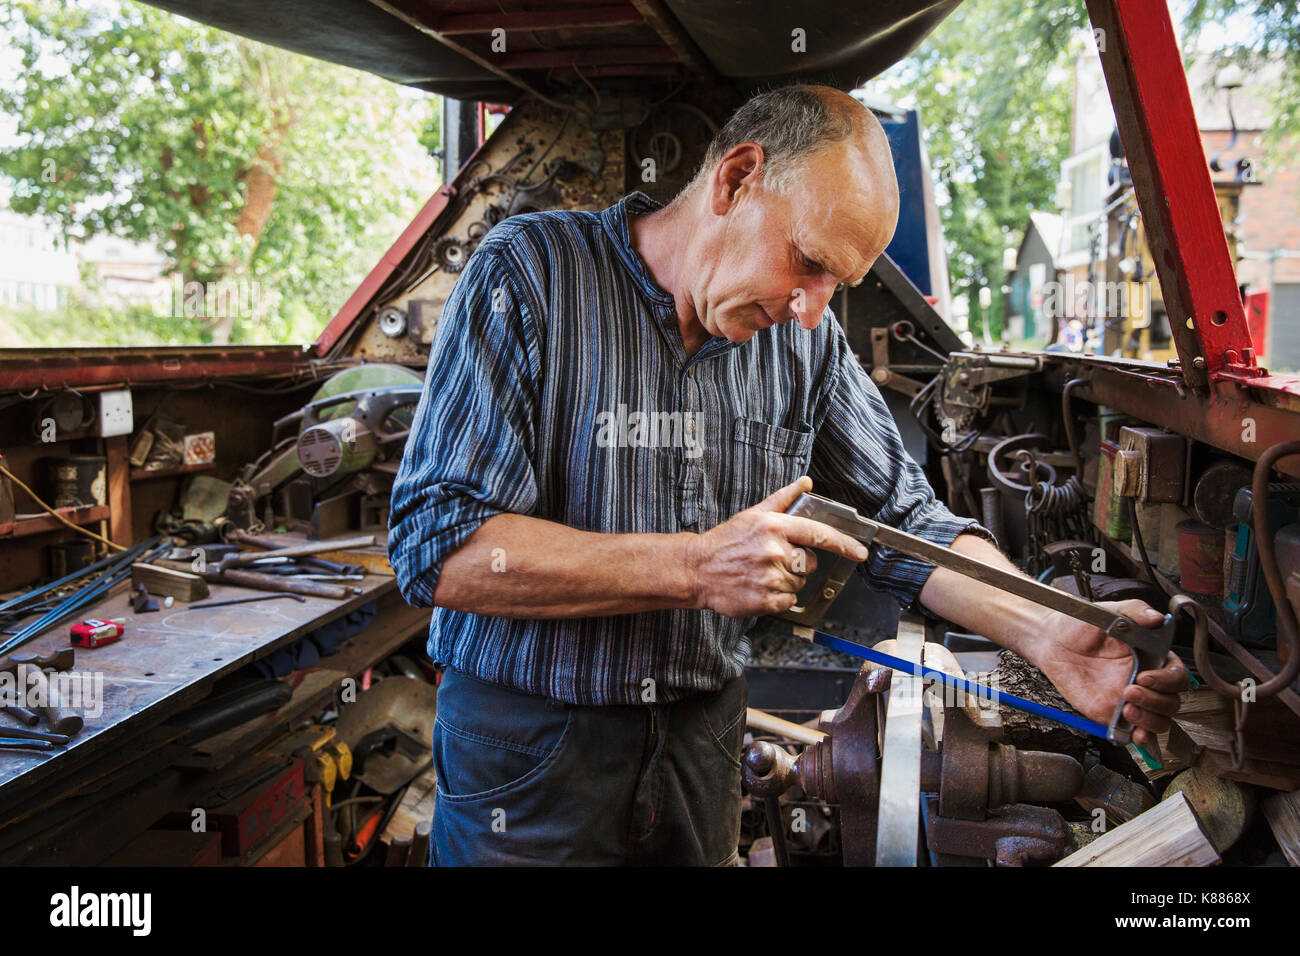 Dans son atelier de forgeron sur une barge de travail, à un établi, à l'aide d'une scie à métaux. Banque D'Images